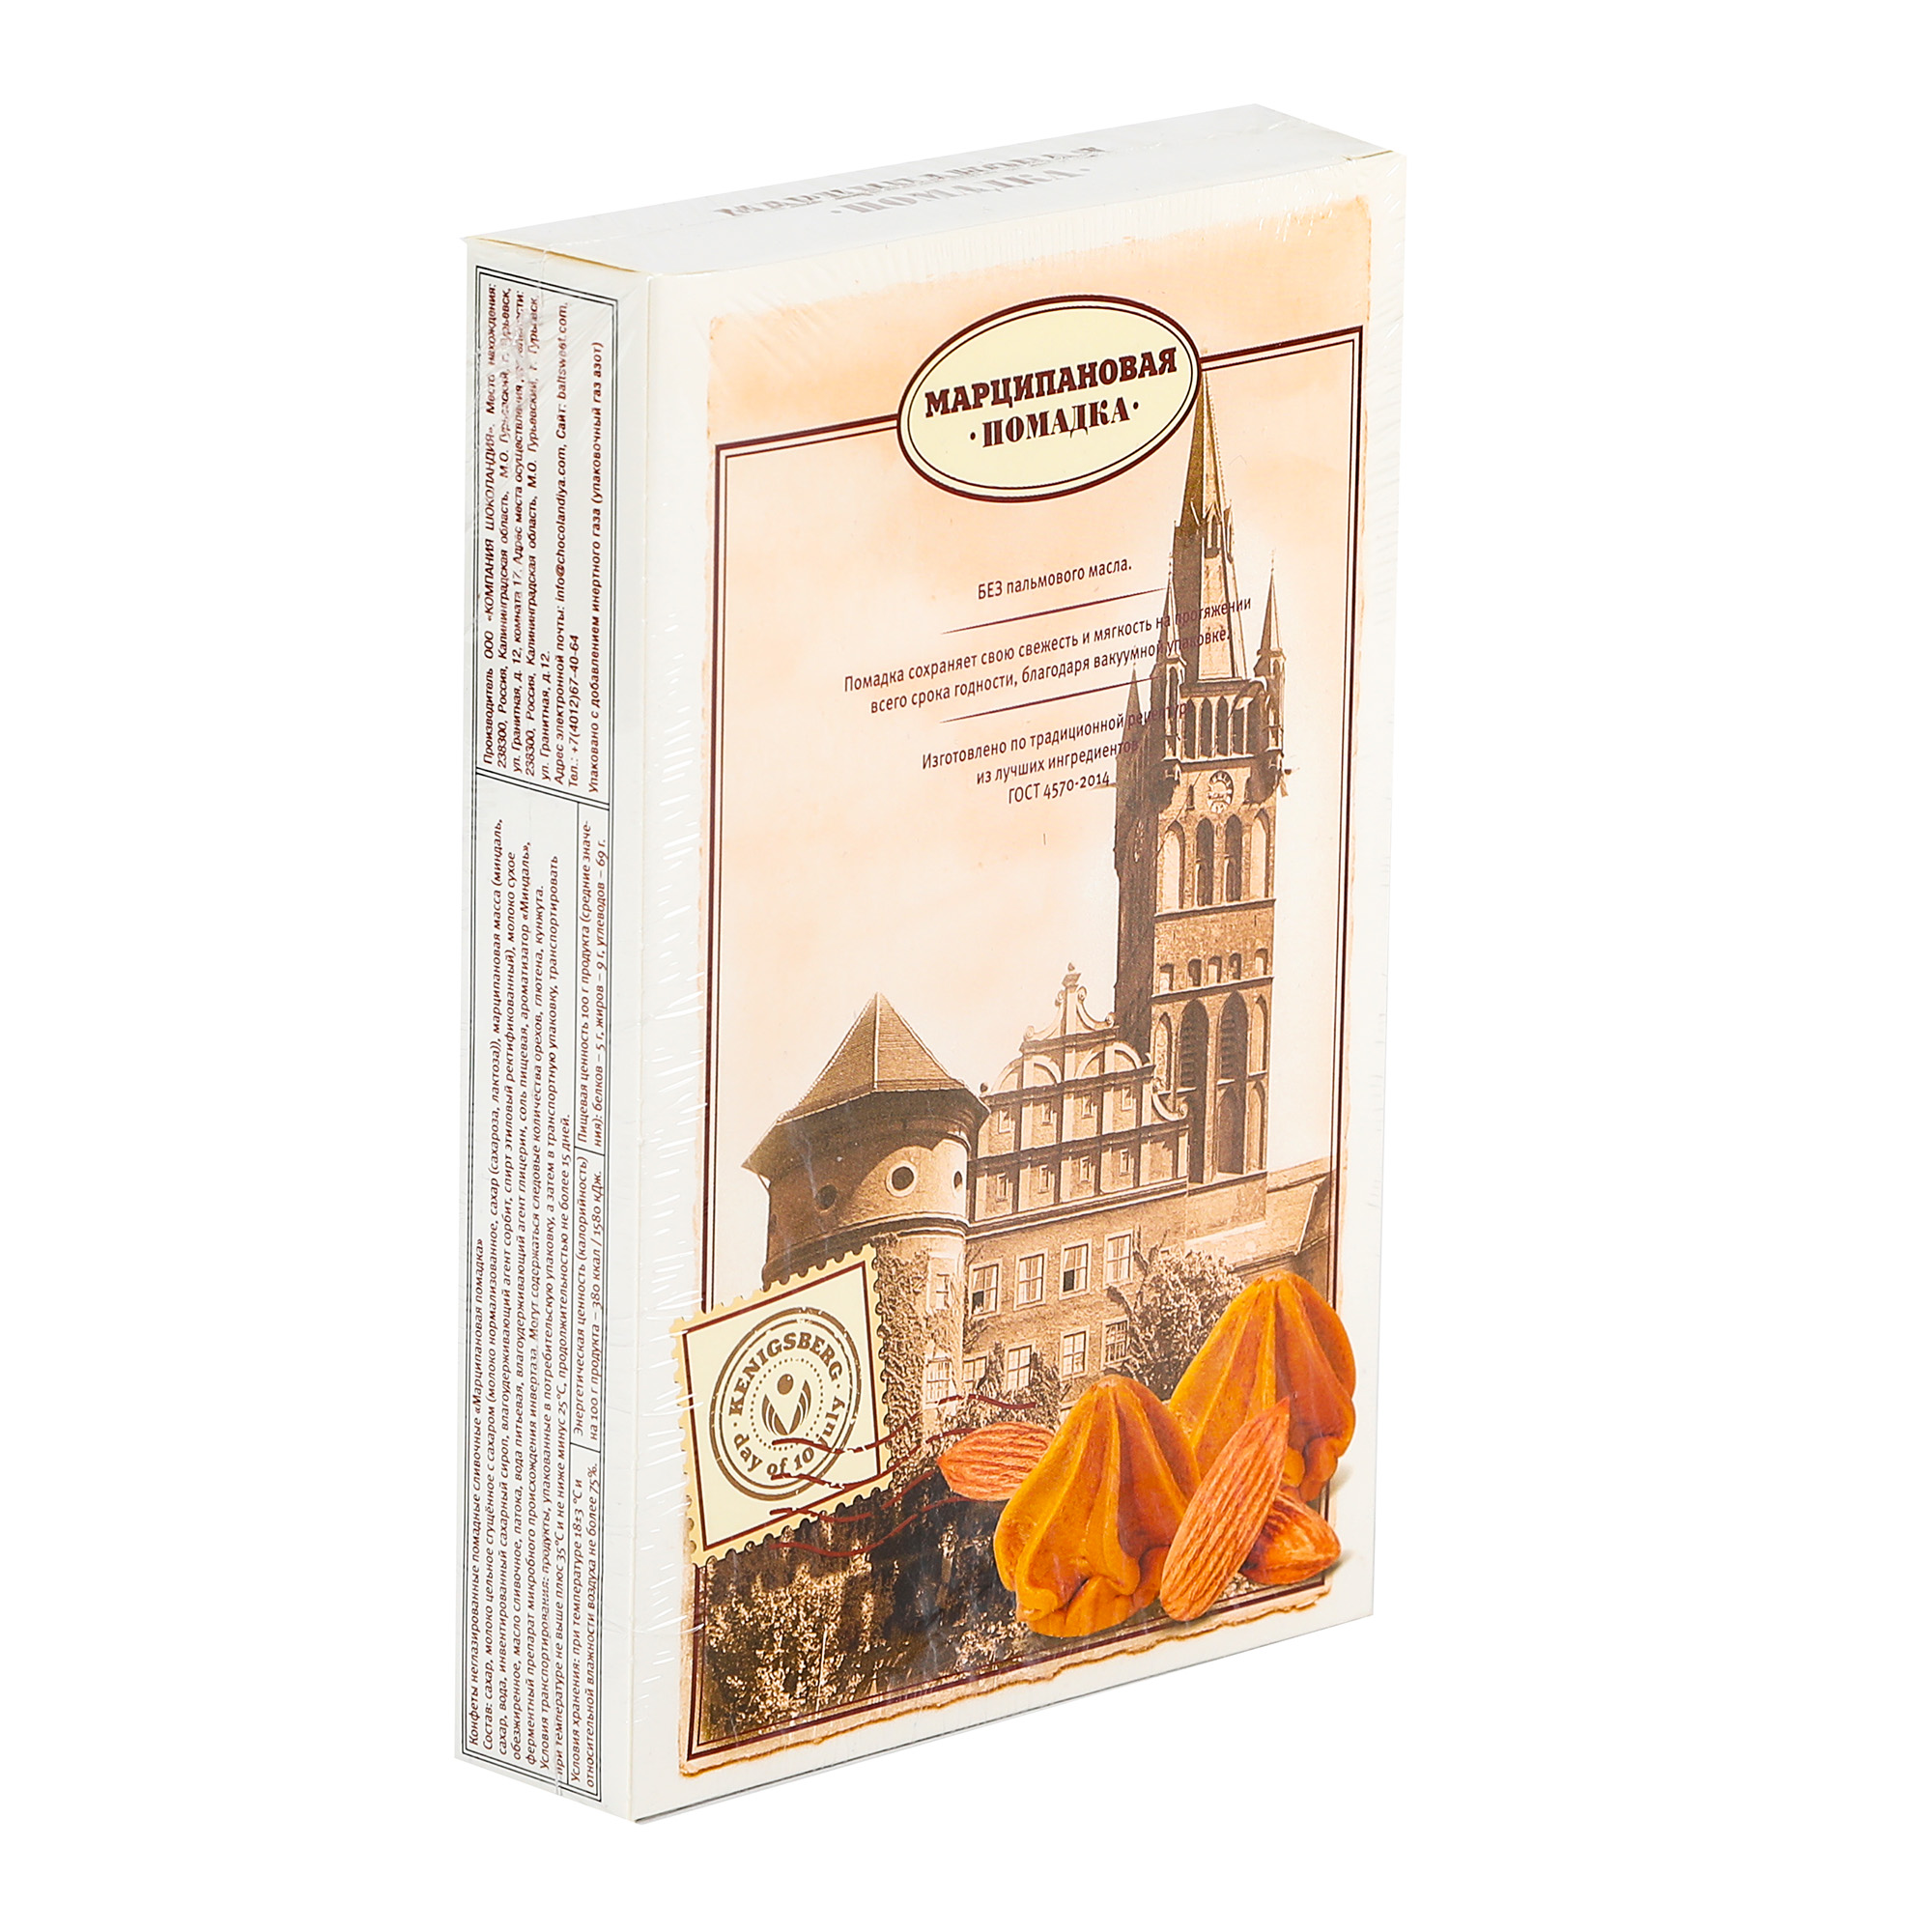 Конфеты Компания Шоколандия помадка Kenigsberg, 150 г конфеты компания шоколандия помадка kenigsberg 150 г